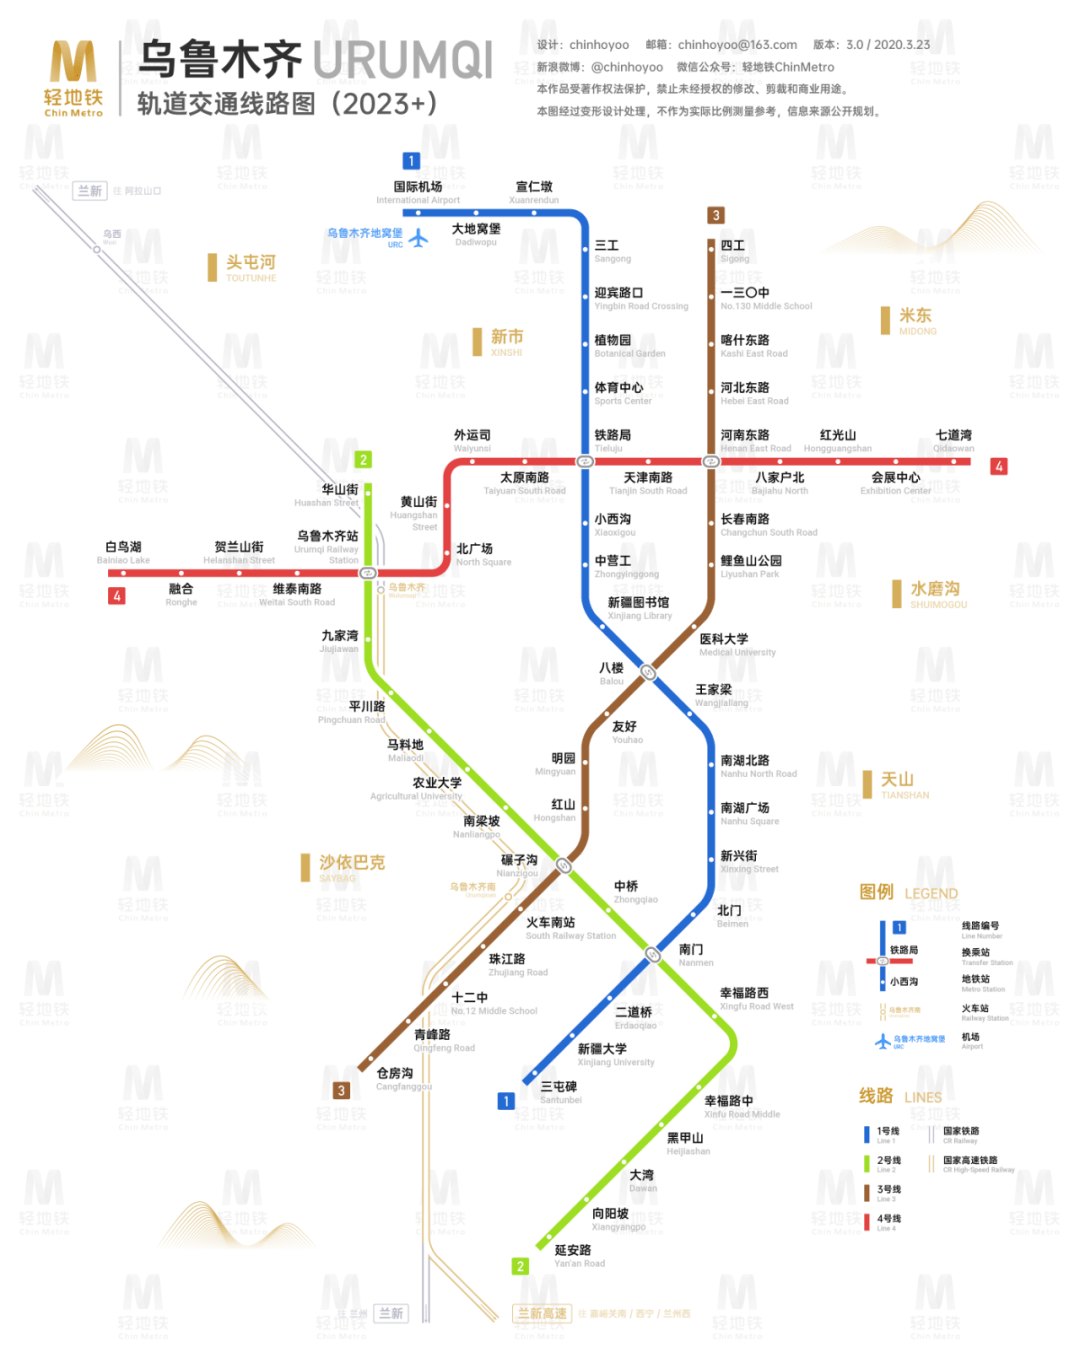 富民县地铁规划线路图图片